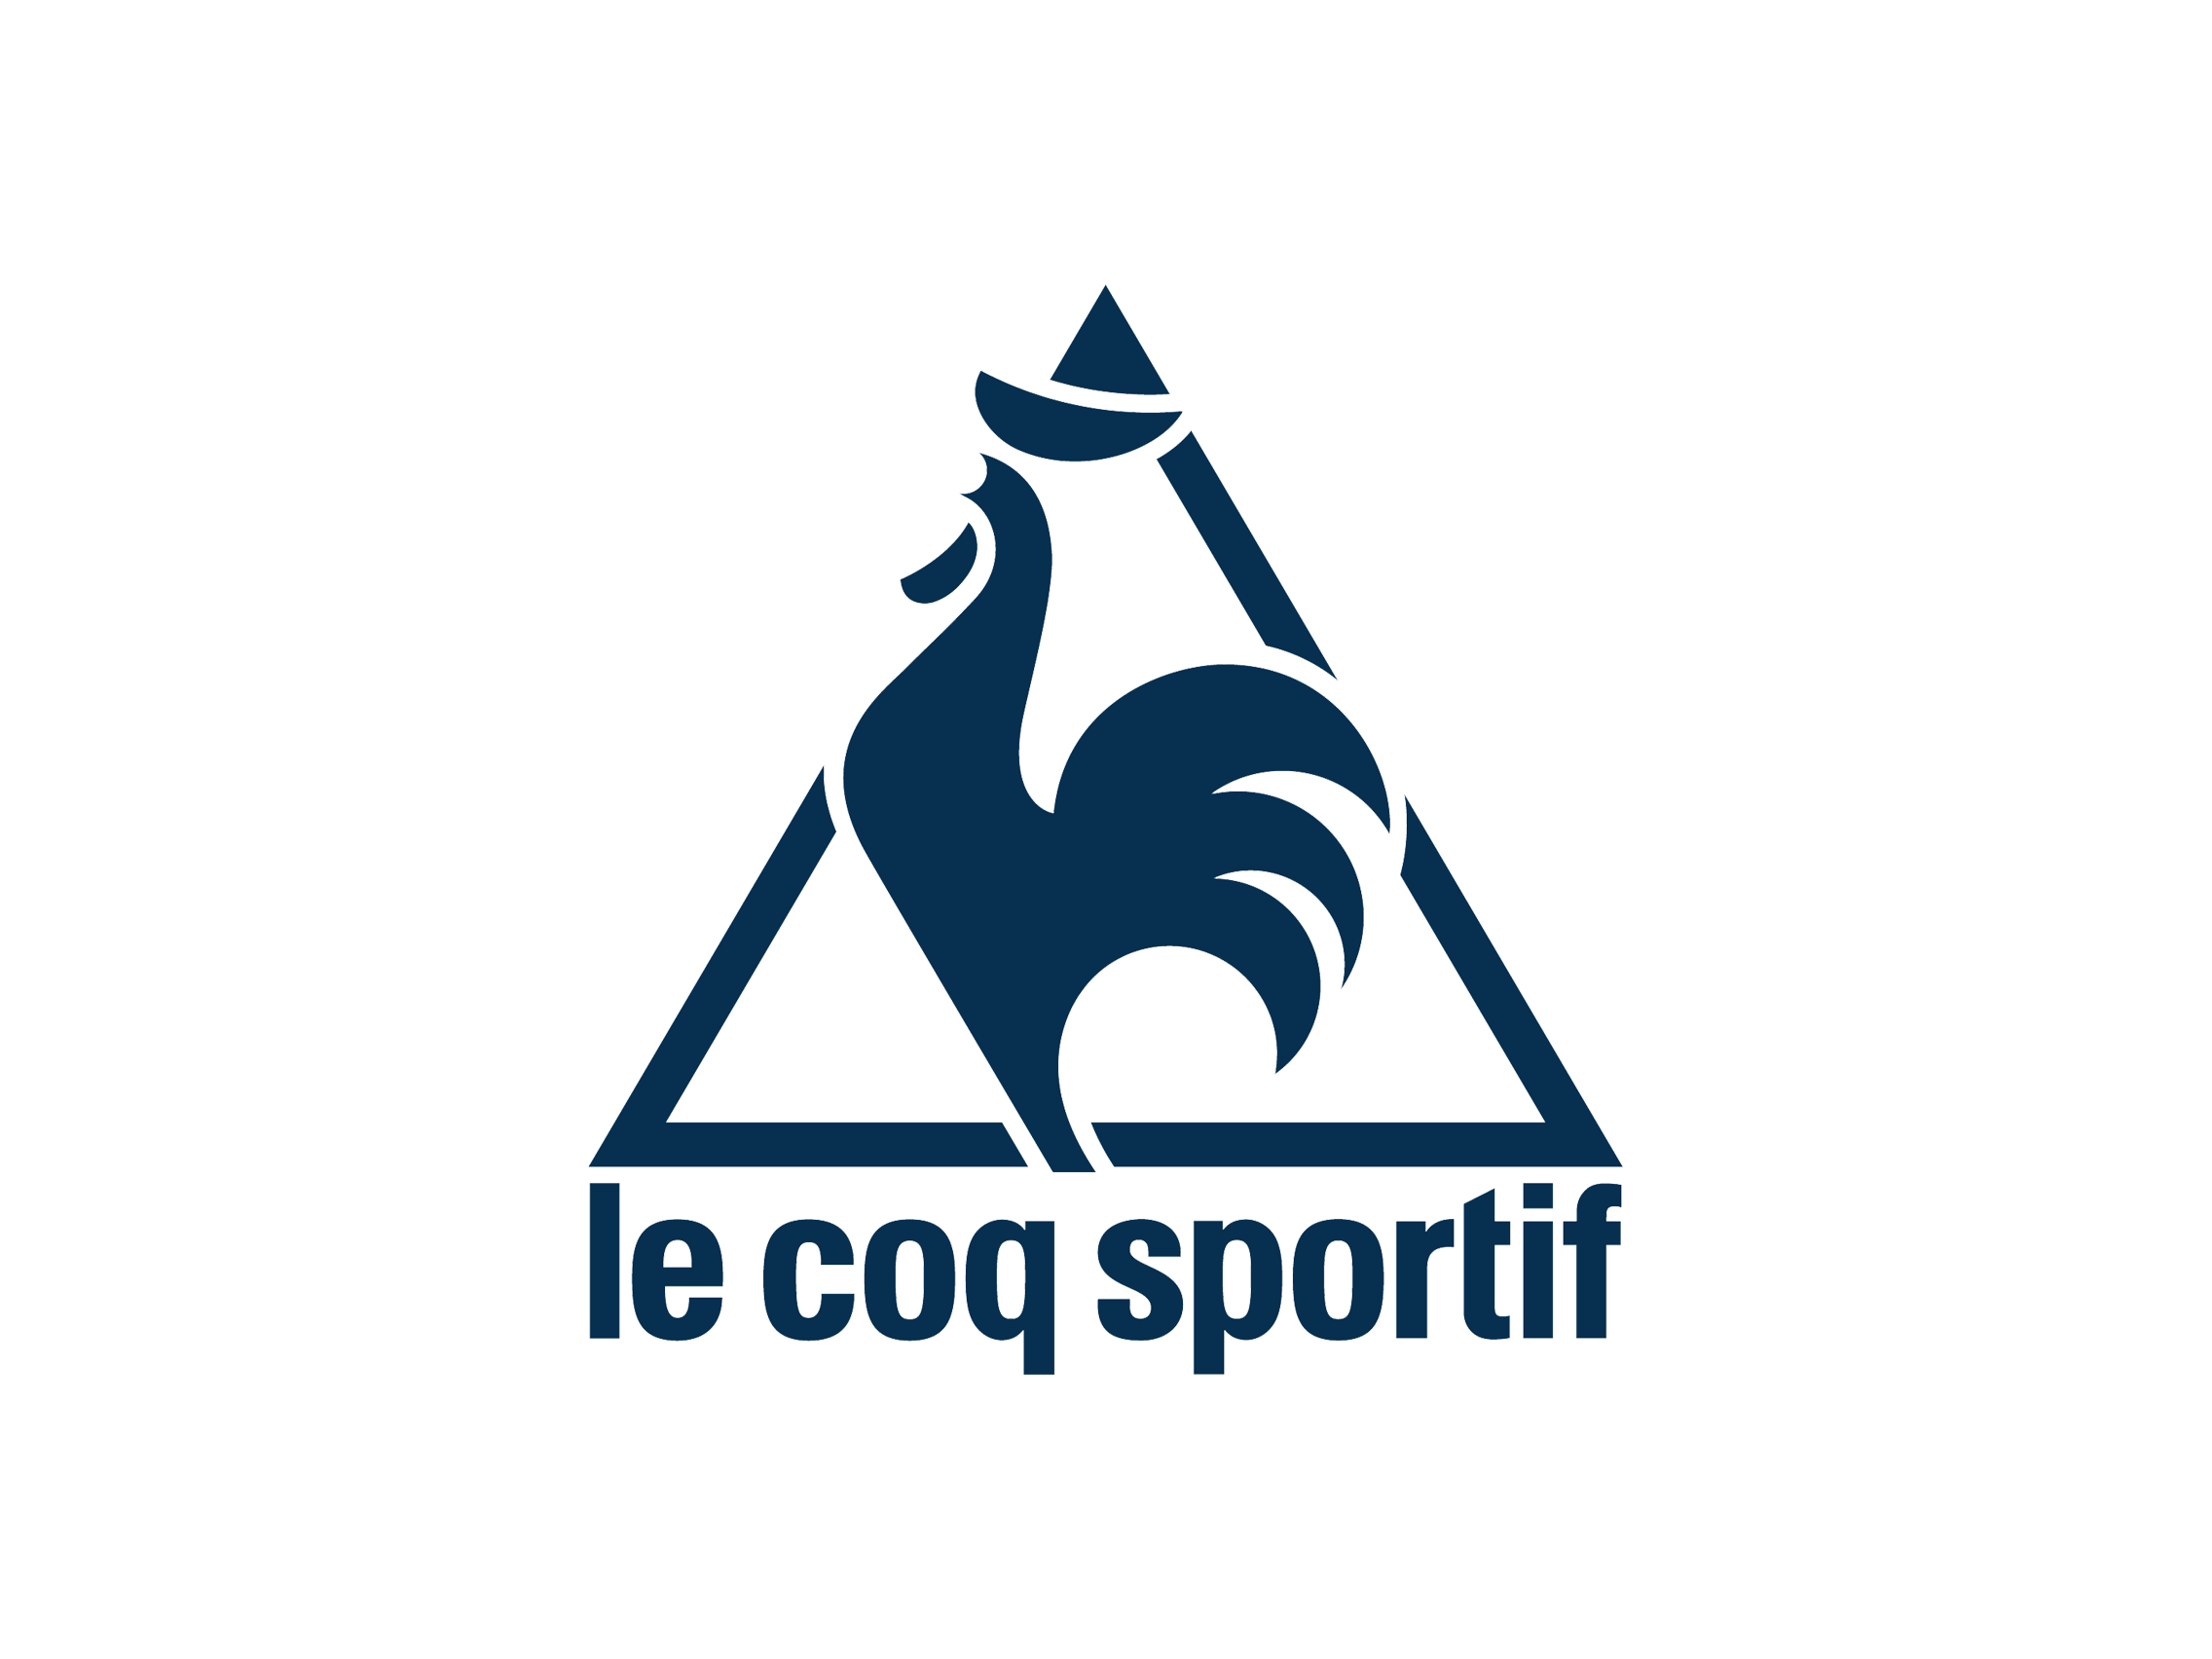 Le Coq Sportif Wallpaper Download | estudioespositoymiguel.com.ar